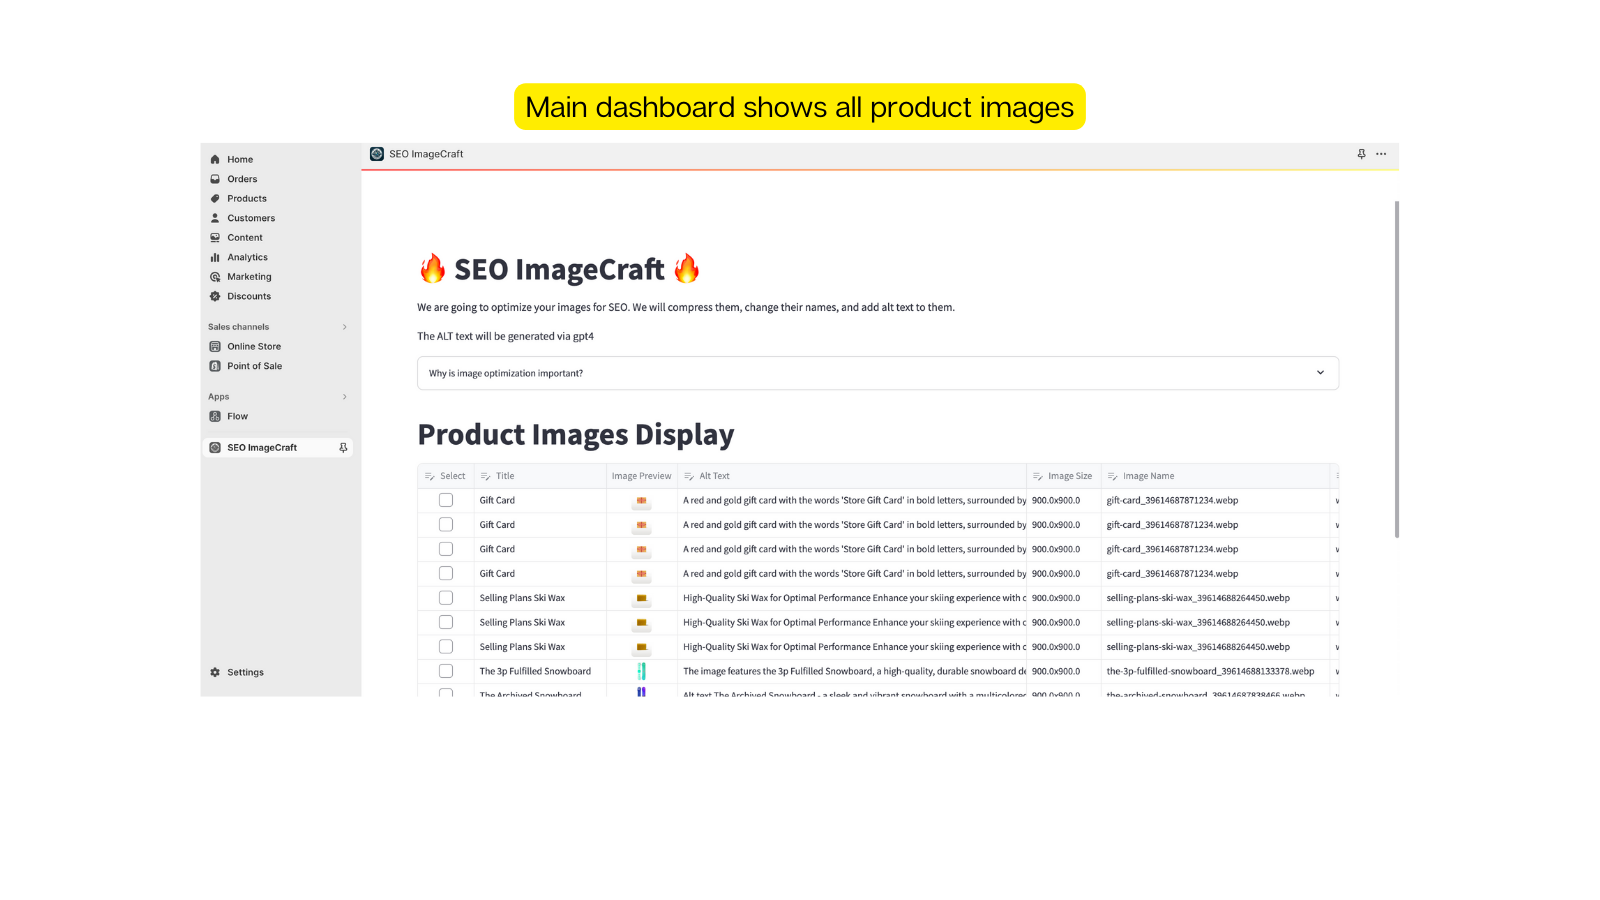 Hoofddashboard toont alle productafbeeldingen met optie voor weergave